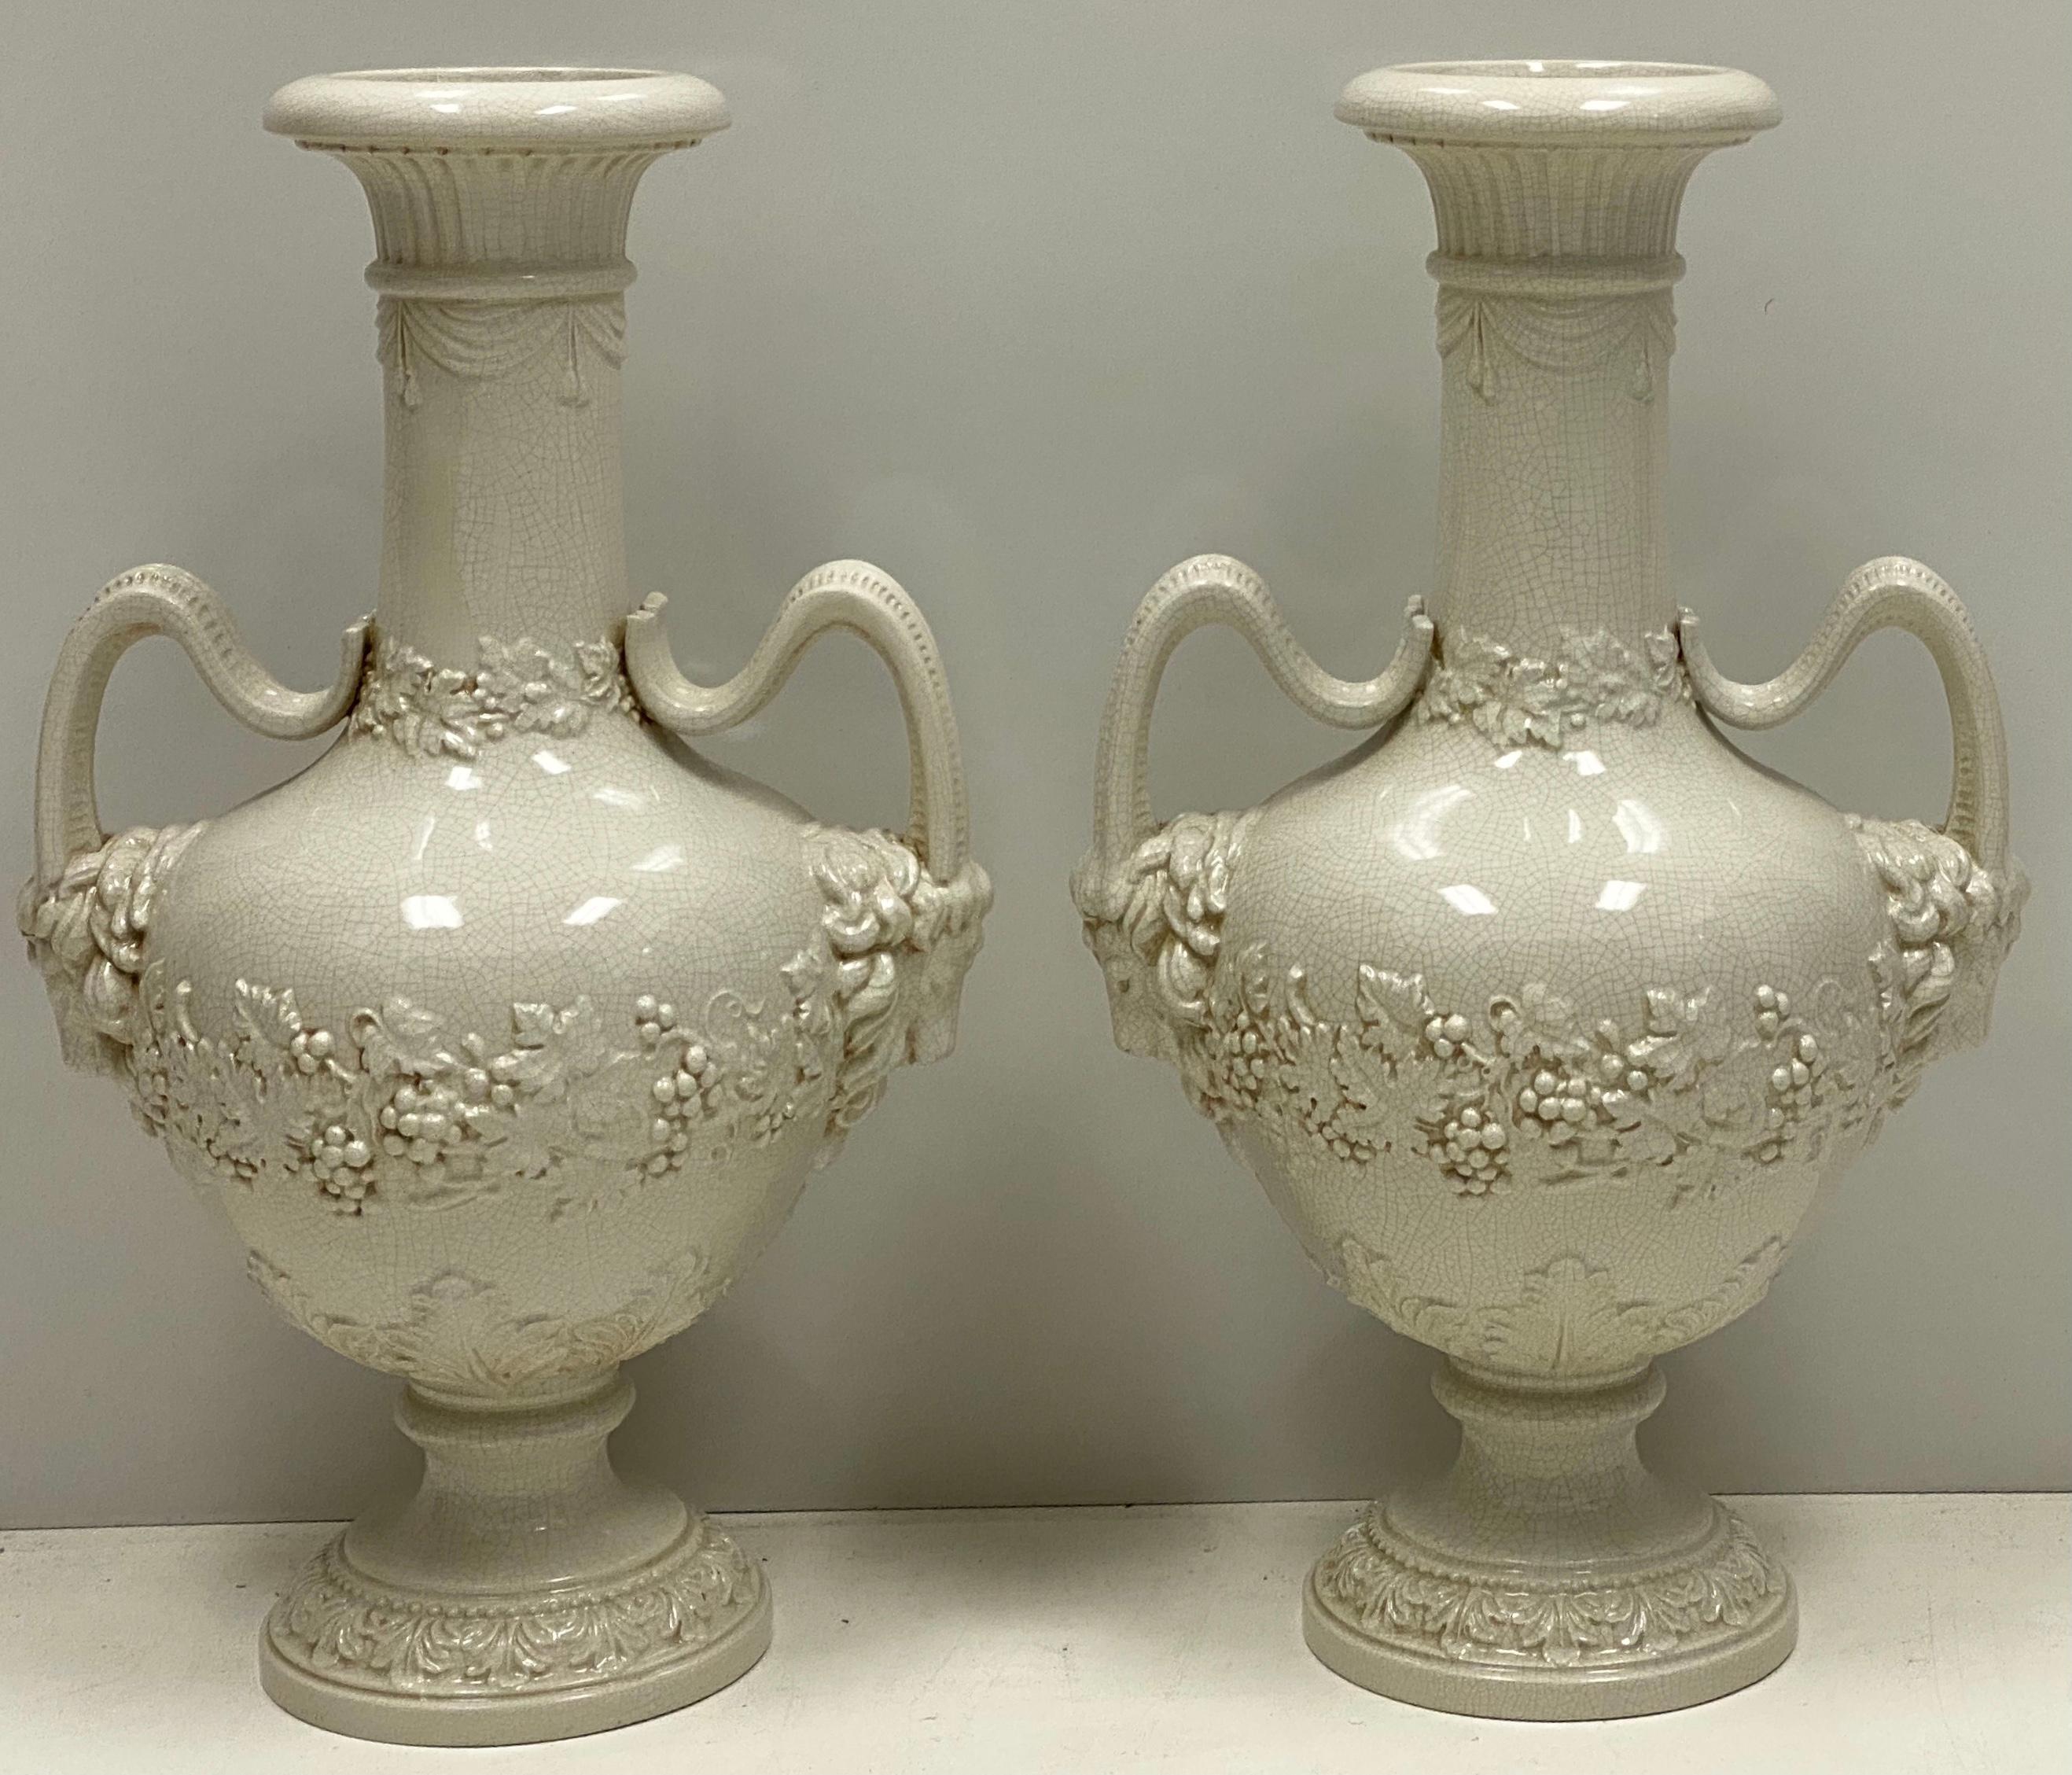 urn style vase